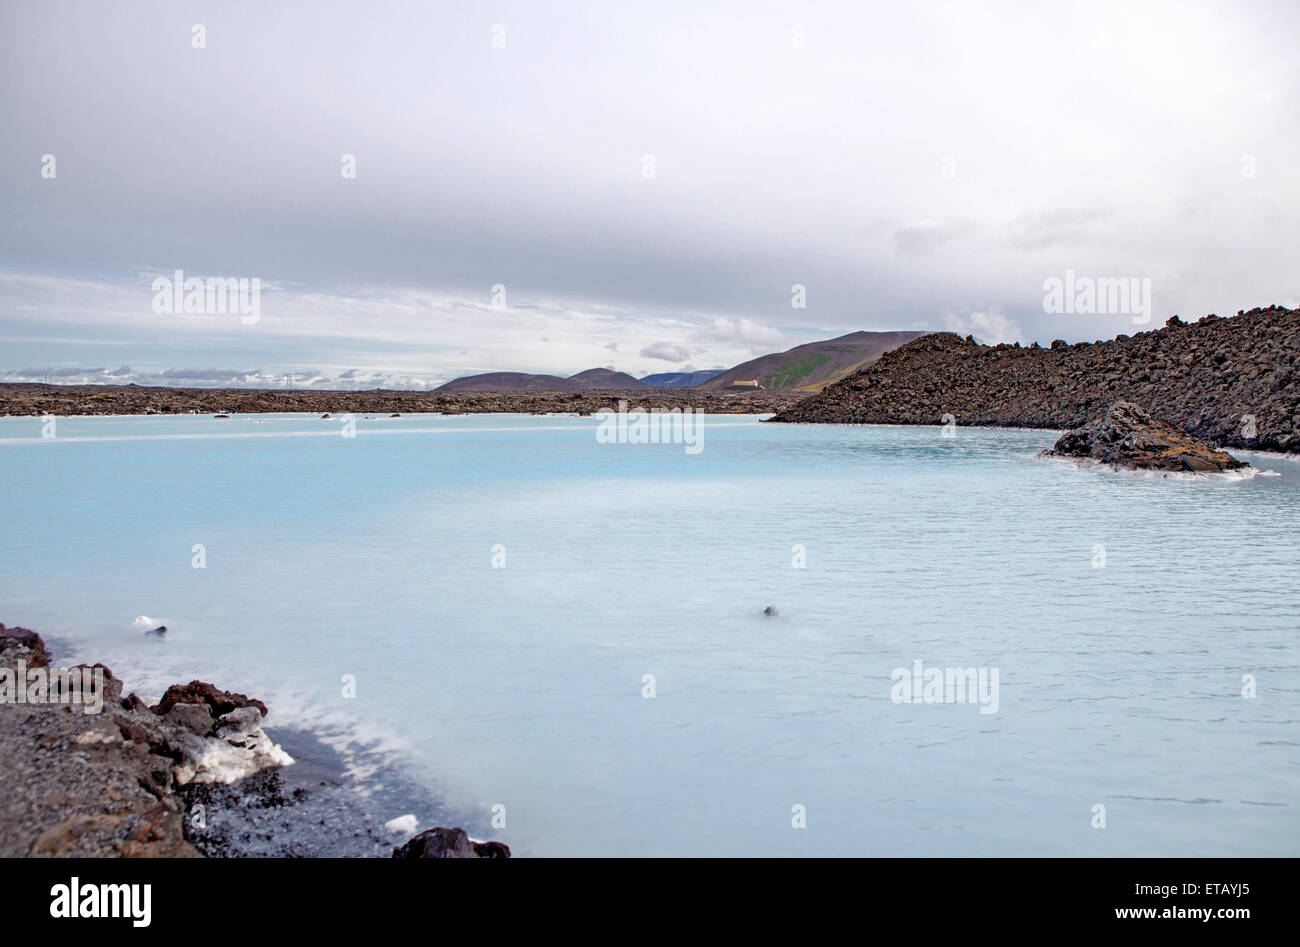 Die Lagune ist eine künstliche Lagune, die von der Wasser-Ausgabe des nahe gelegenen geothermischen Kraftwerks Svartsengi gespeist wird. Stockfoto